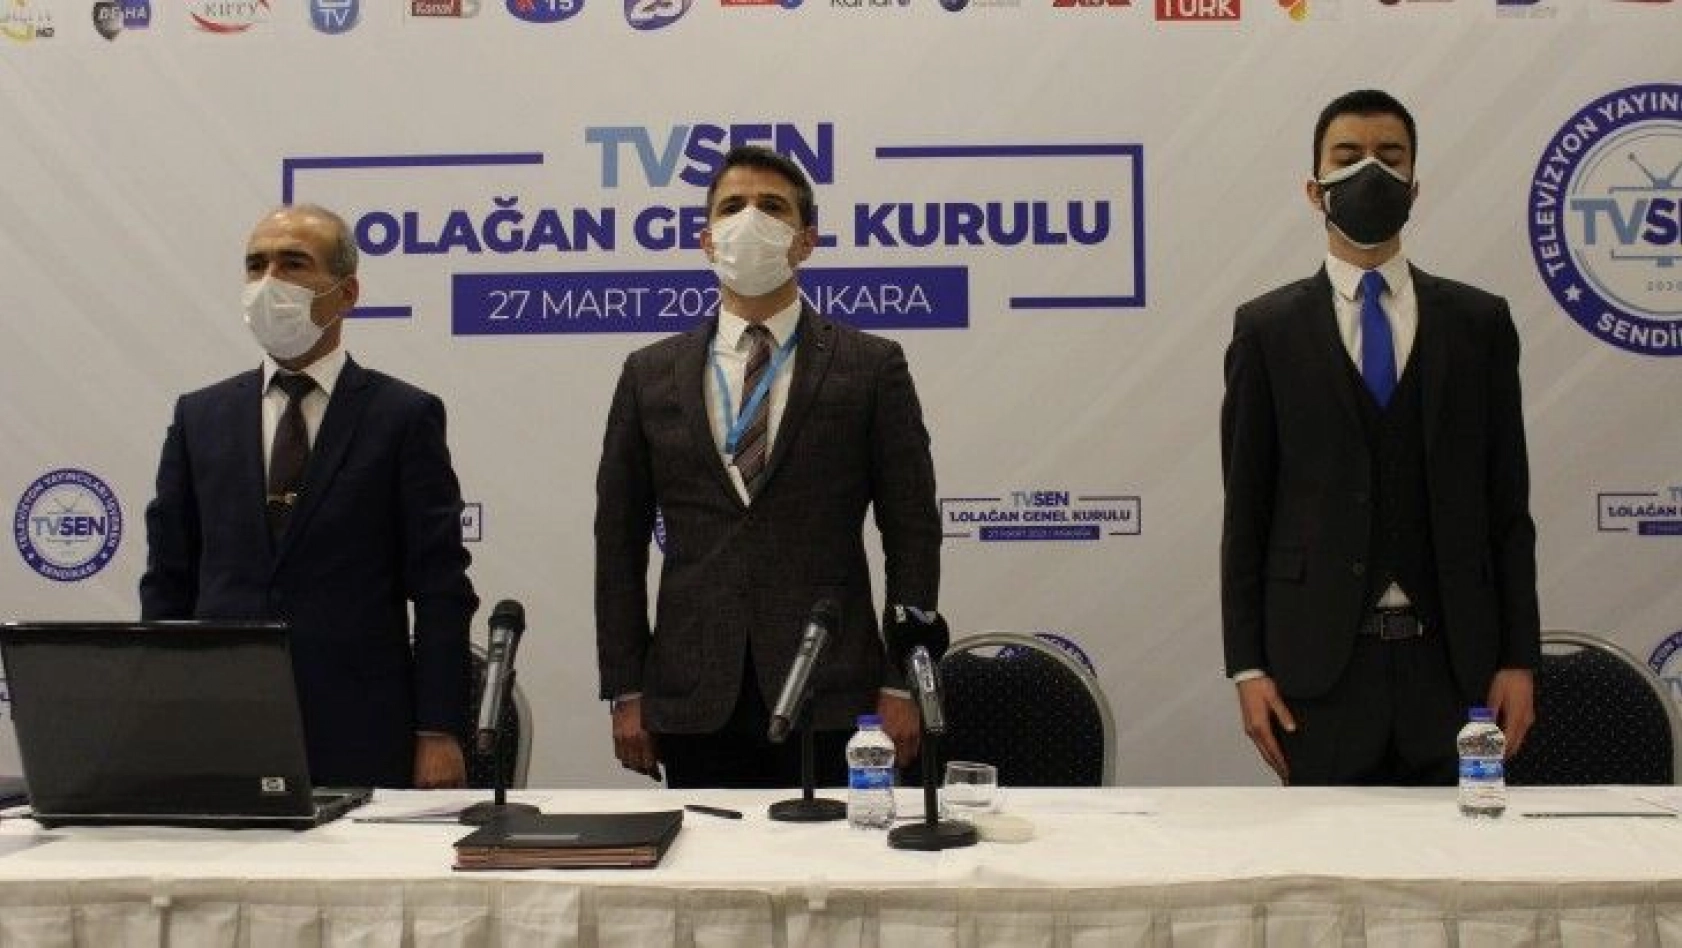 TVSEN 1. Olağan Genel Kurulu Ankara'da gerçekleştirildi